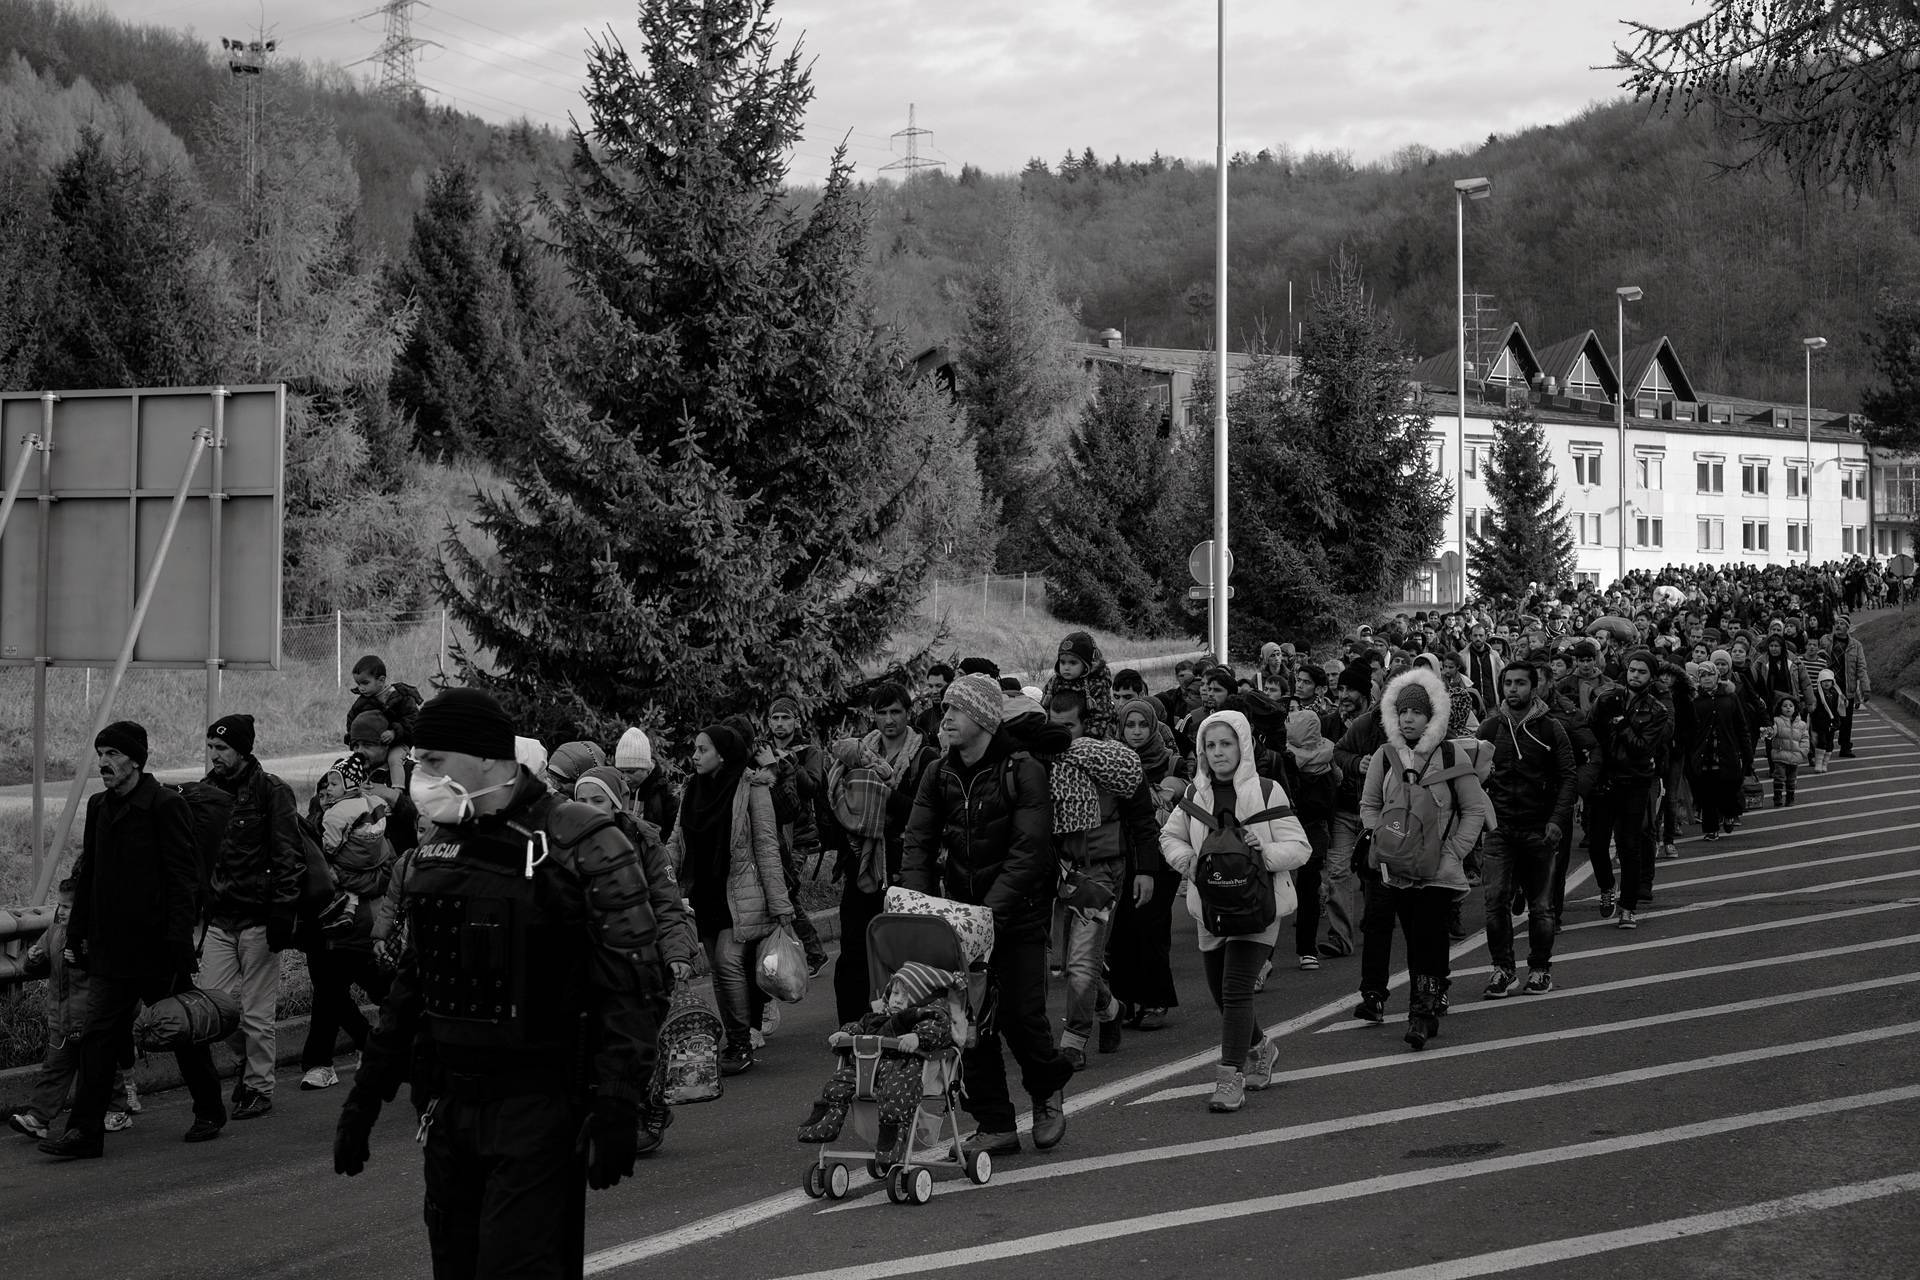 20. November 2015. Šentilj, Slowenien. Slowenische Polizeikräfte und Militär begleiten eine Gruppe Geflüchtete zum Grenzübergang nach österreichischem Spielfeld.